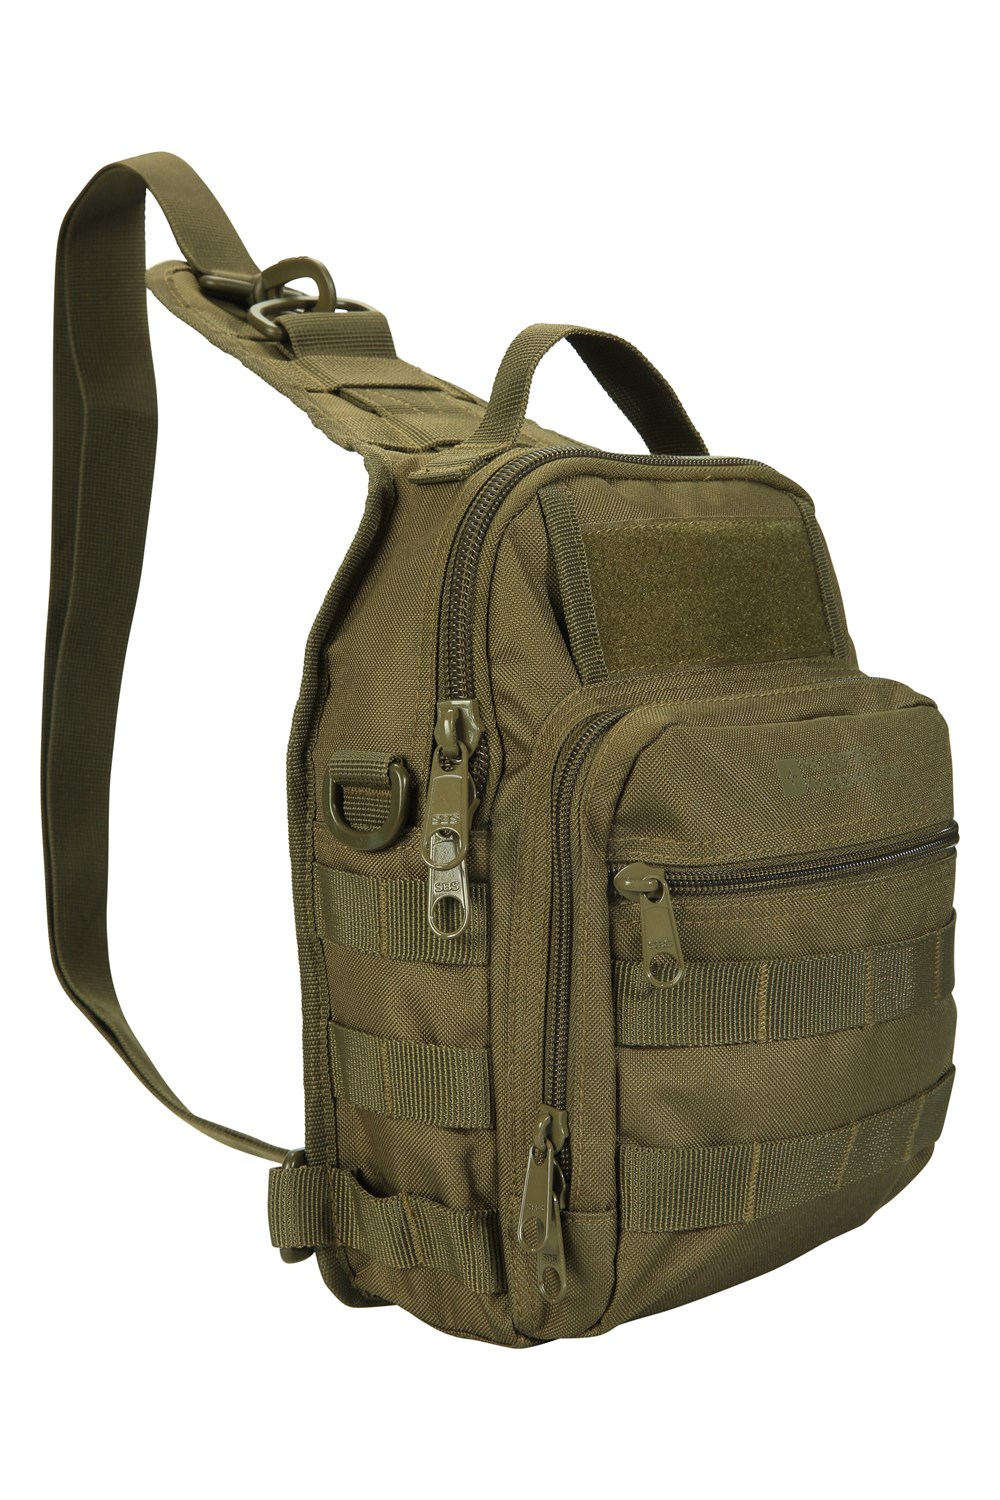 Mountain Warehouse Legion Sling Bag 6L Shoulder Bag 5057634215374 | eBay